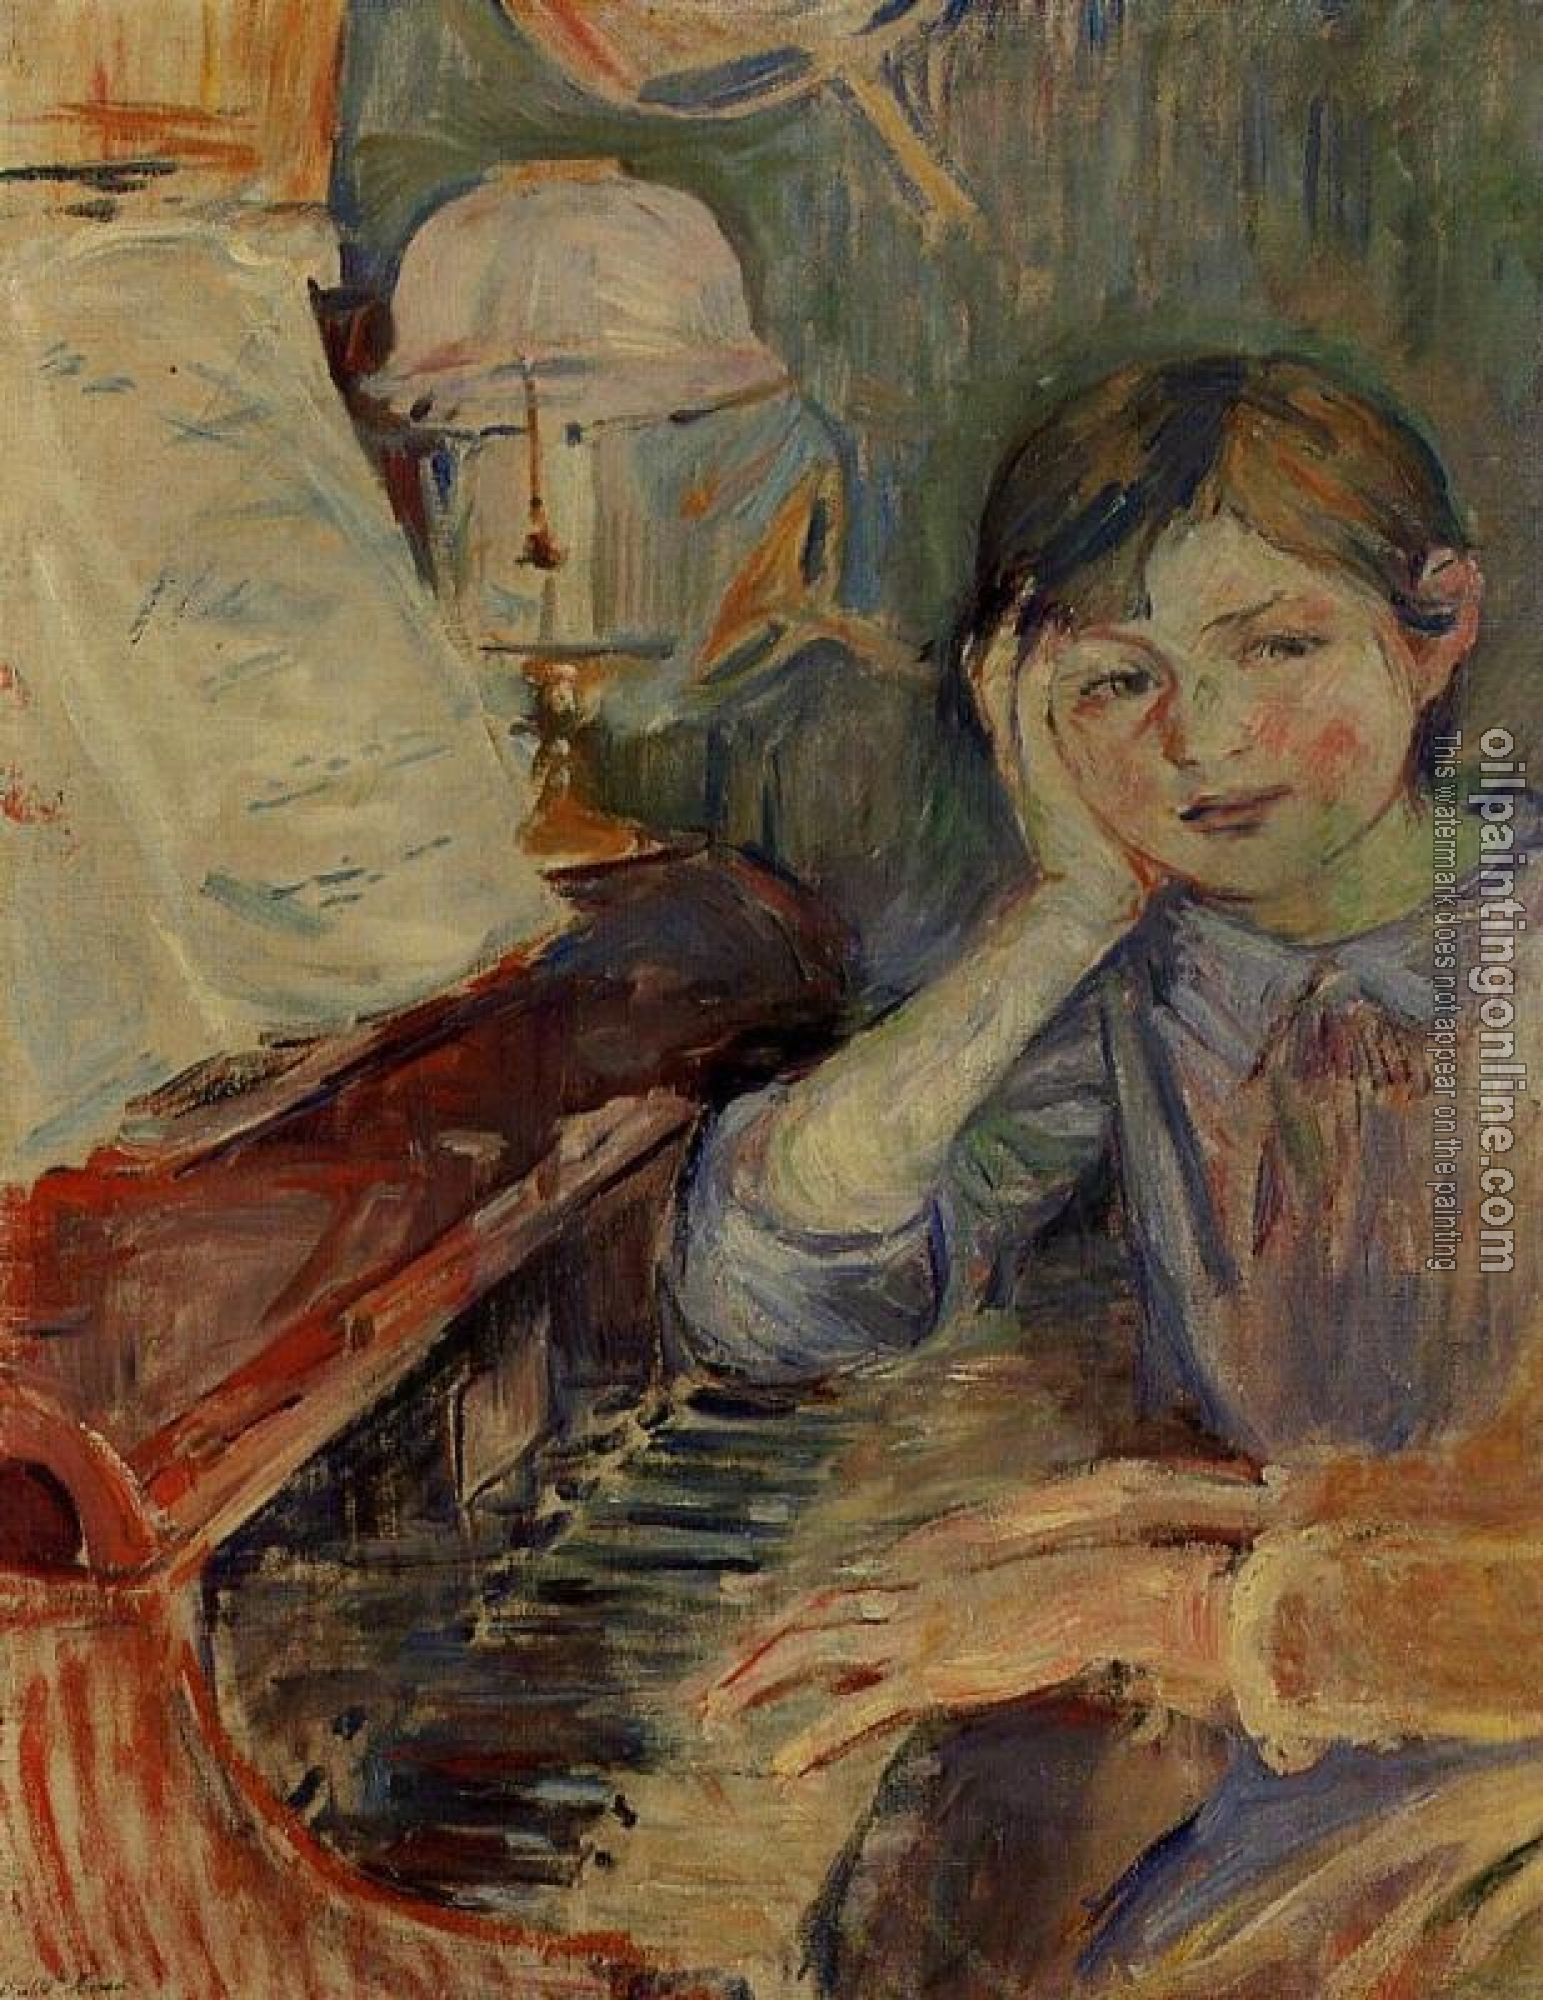 Morisot, Berthe - Julie Listening